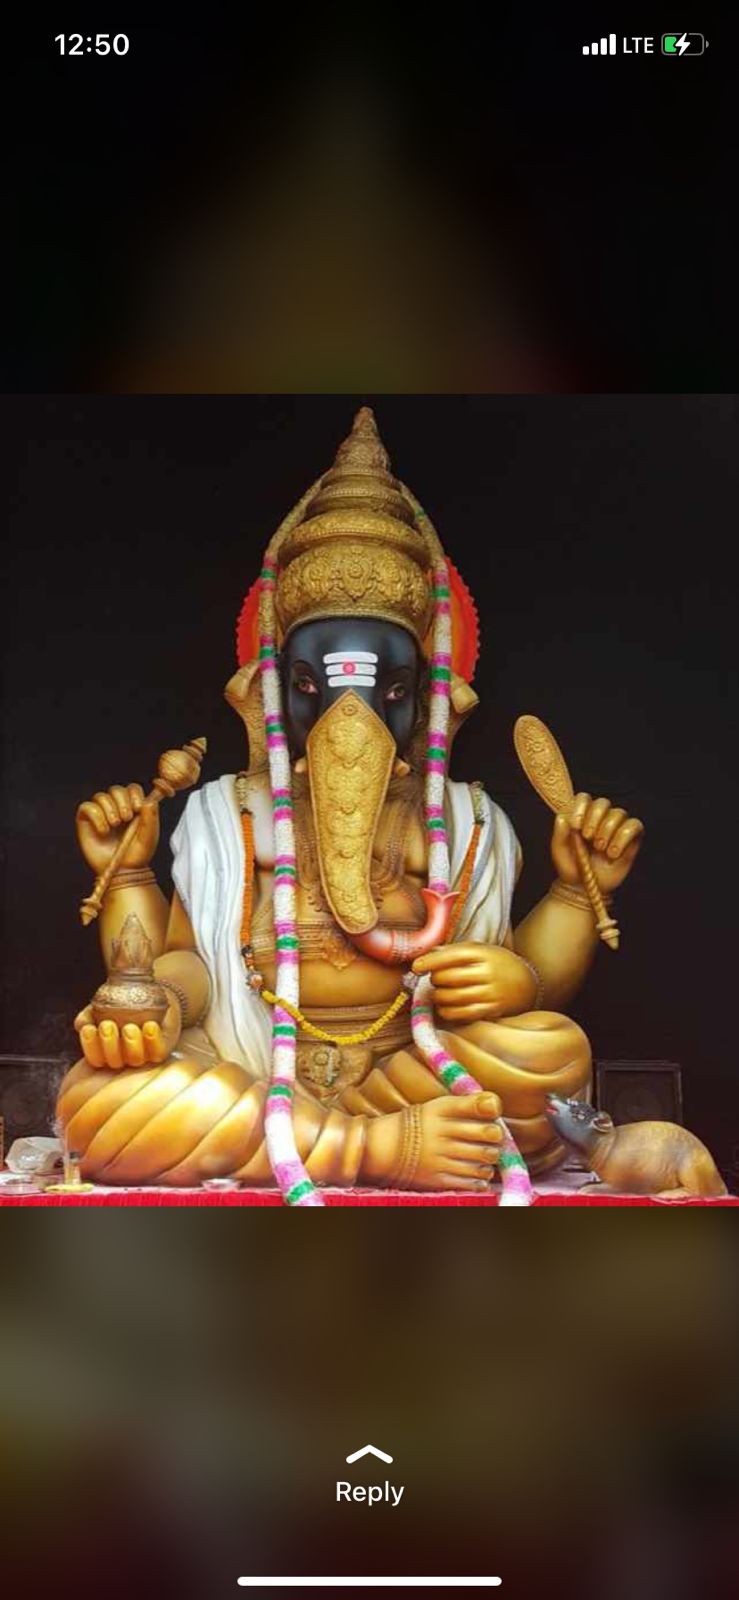 Shri Bhartiya Samaj Ganesh Utsav Samiti Tatyapara Chowk, Raipur, Ganeshotsav, Raipur, Chhattisgarh, Khabargali